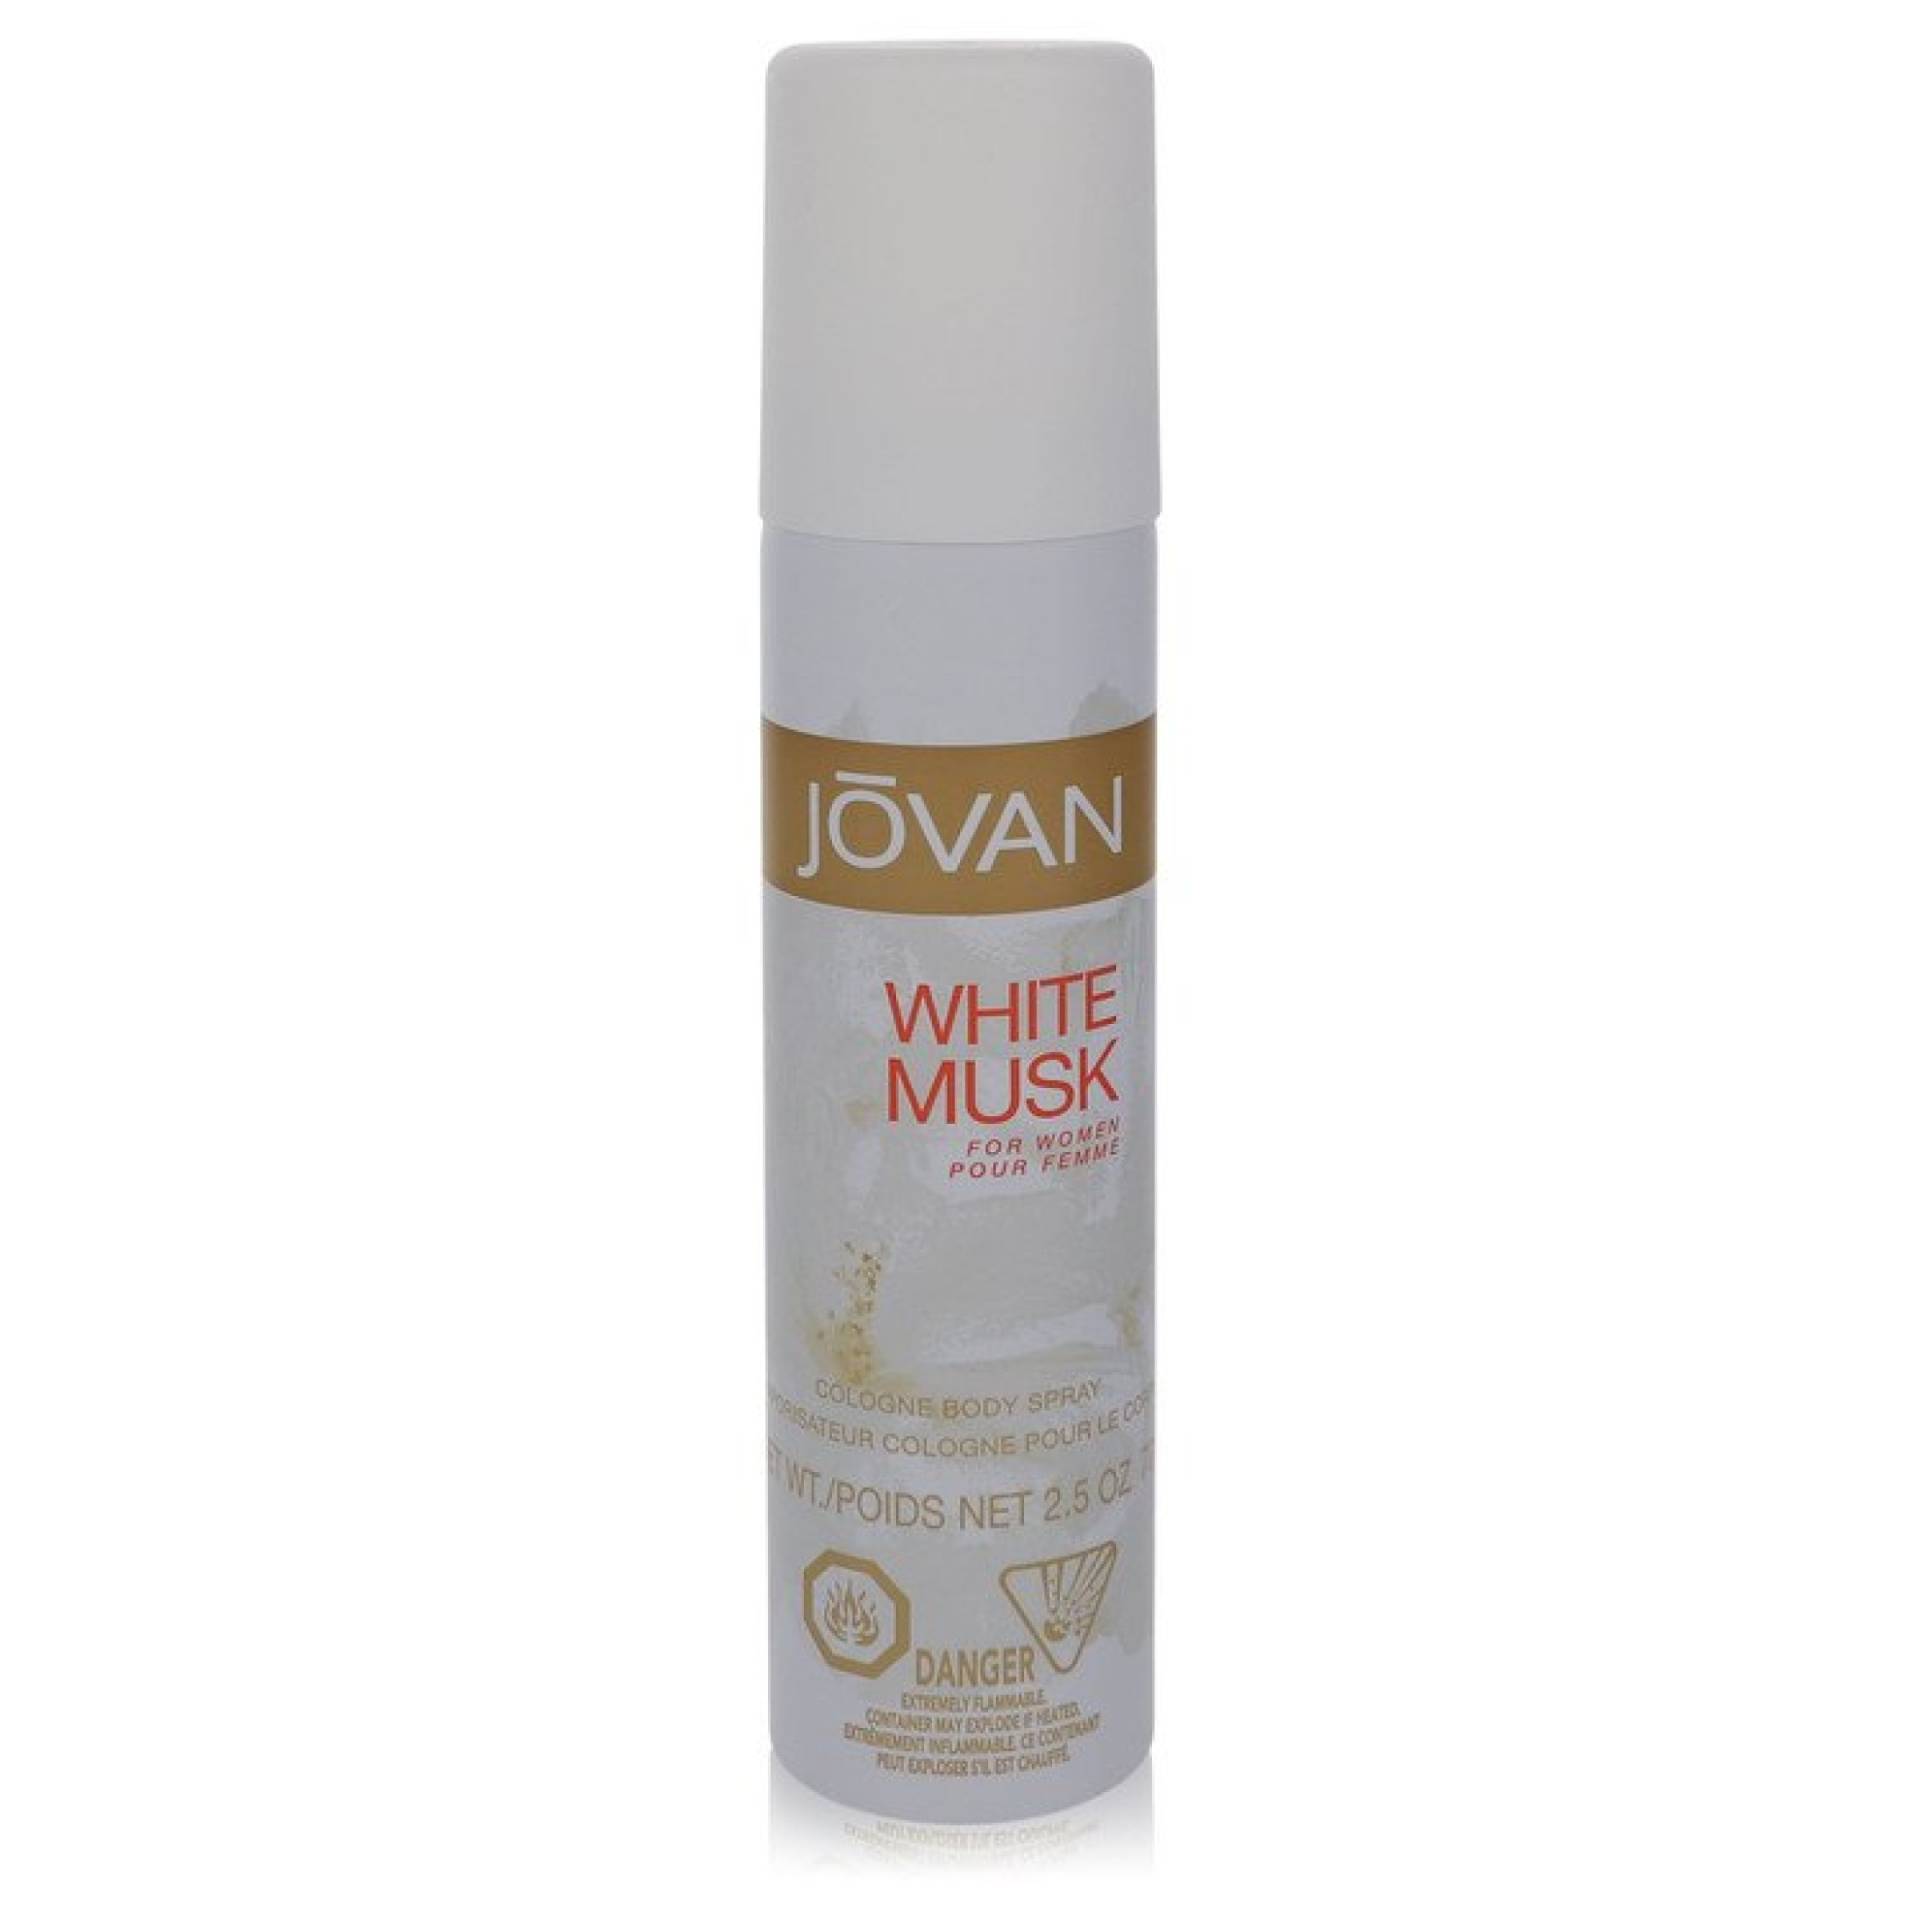 Jovan JOVAN WHITE MUSK Body Spray 75 ml von Jovan